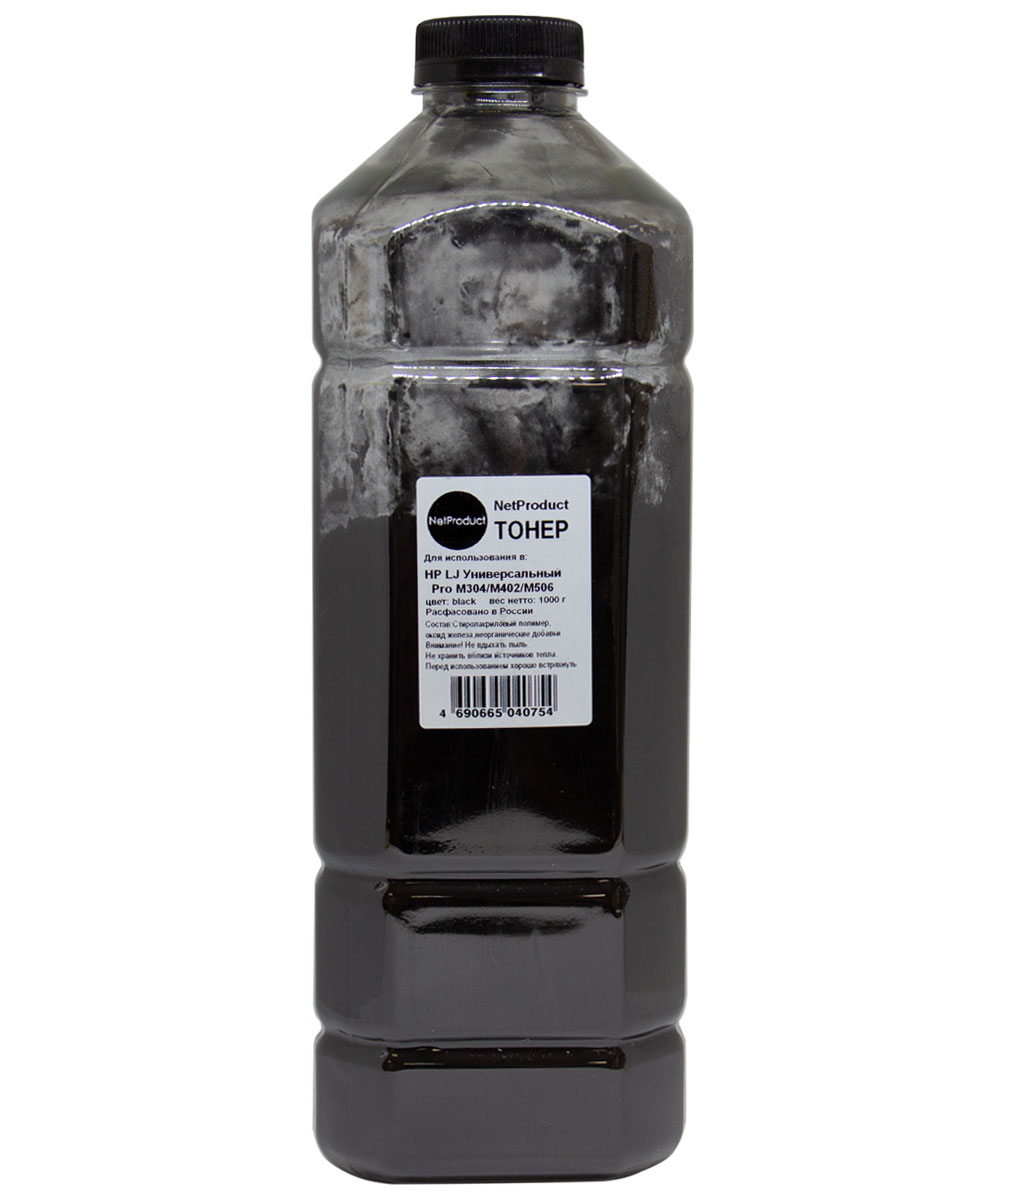 Тонер NetProduct, бутыль 1 кг, черный, совместимый для LJ Pro M304/402/506 (98031701)